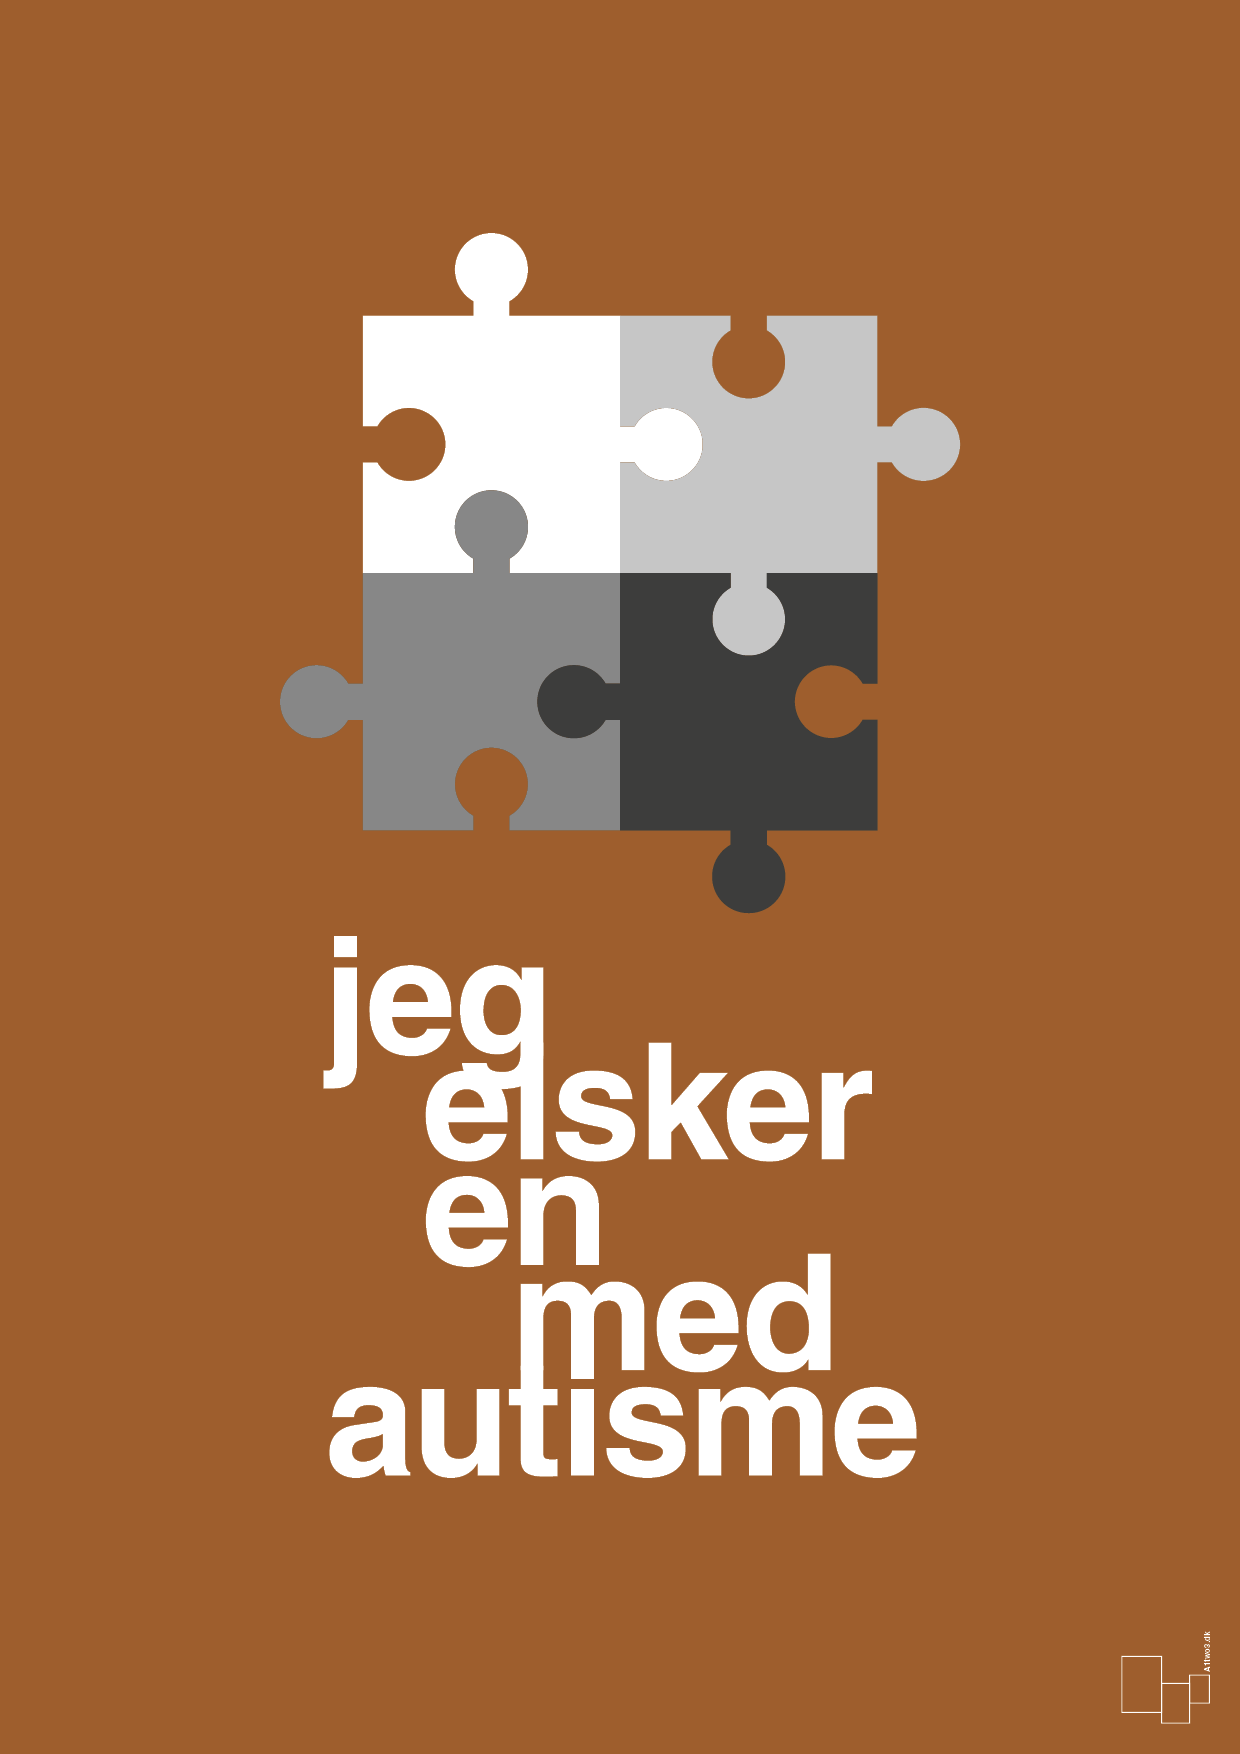 jeg elsker en med autisme - Plakat med Samfund i Cognac